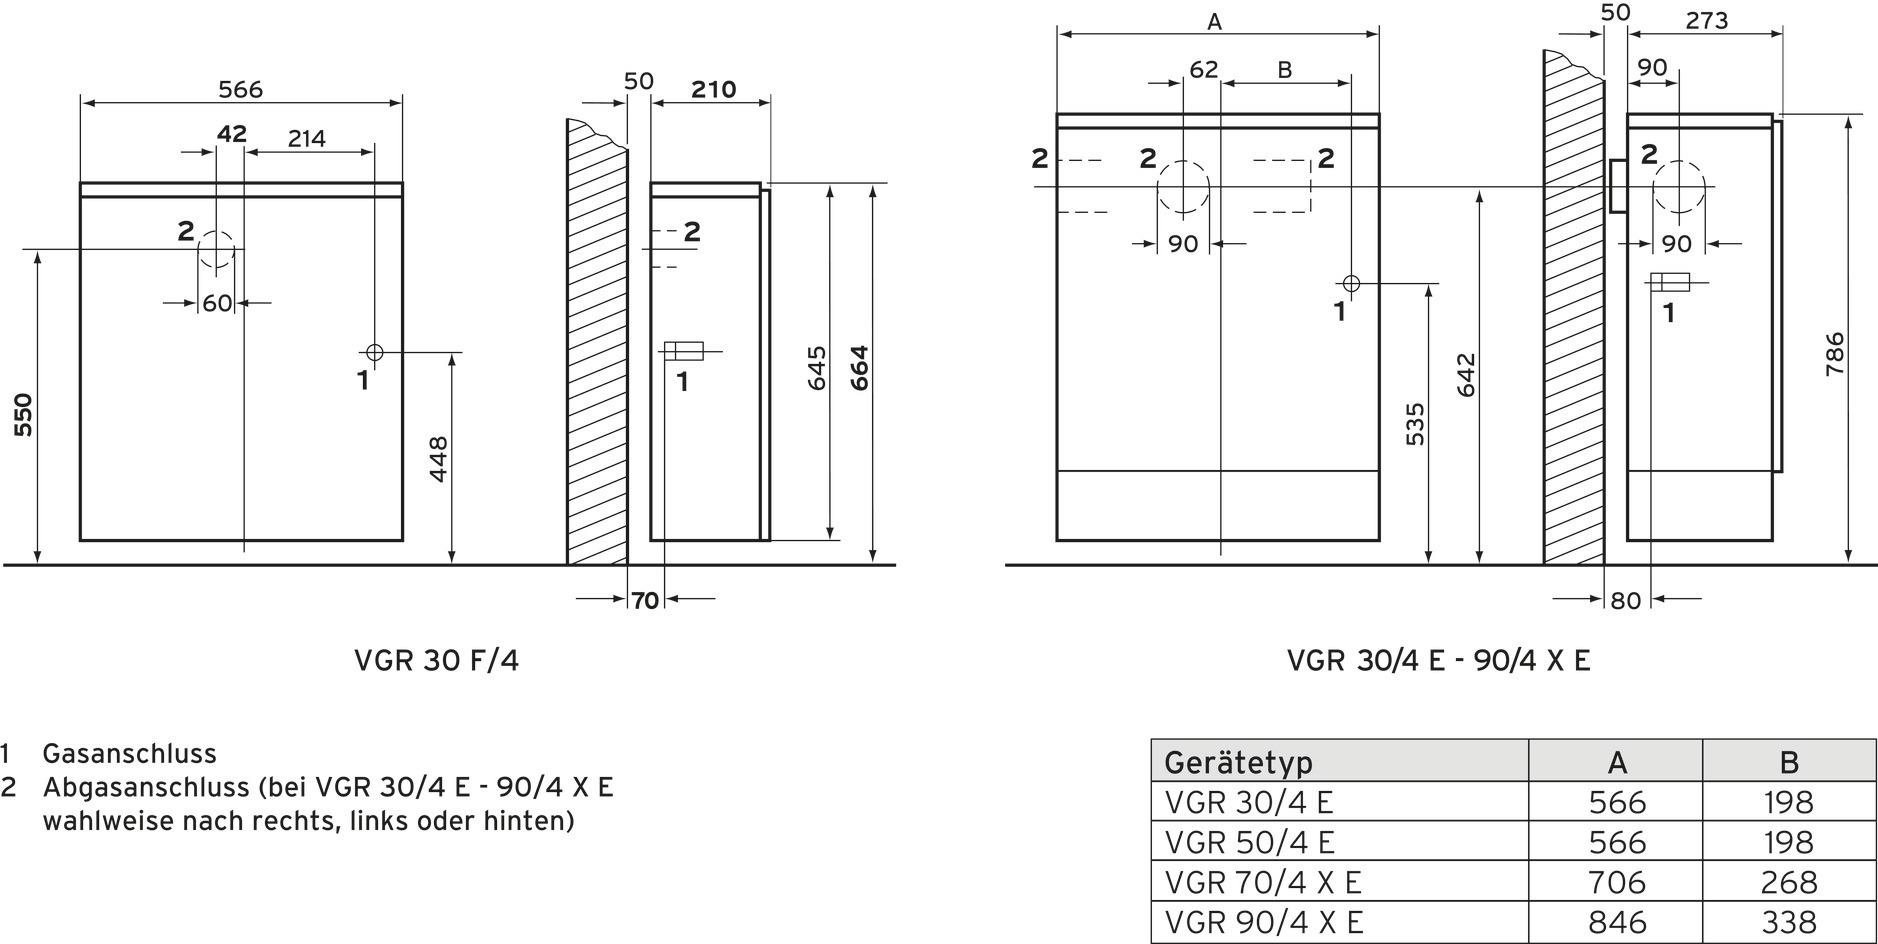 Vaillant Gas-Raumheizautom.VGR 30 F/4 XE für Schornsteinanschluss, cremeweiß/grau